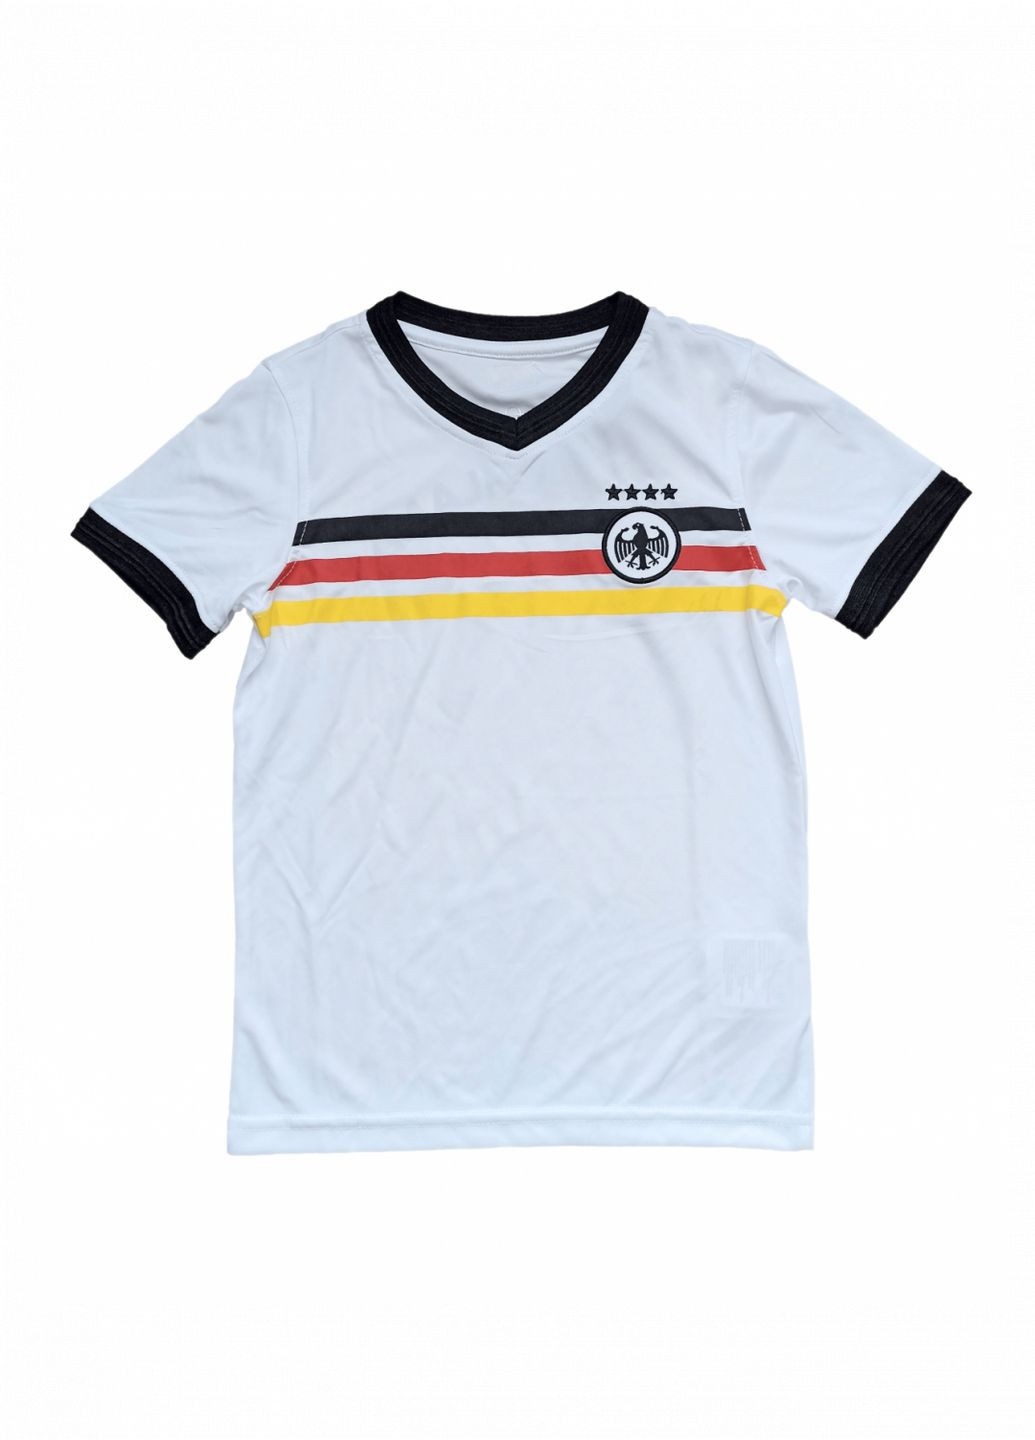 Белая демисезонная спортивная футболка германия / deutschland для мальчика bdo75781 Power Zone